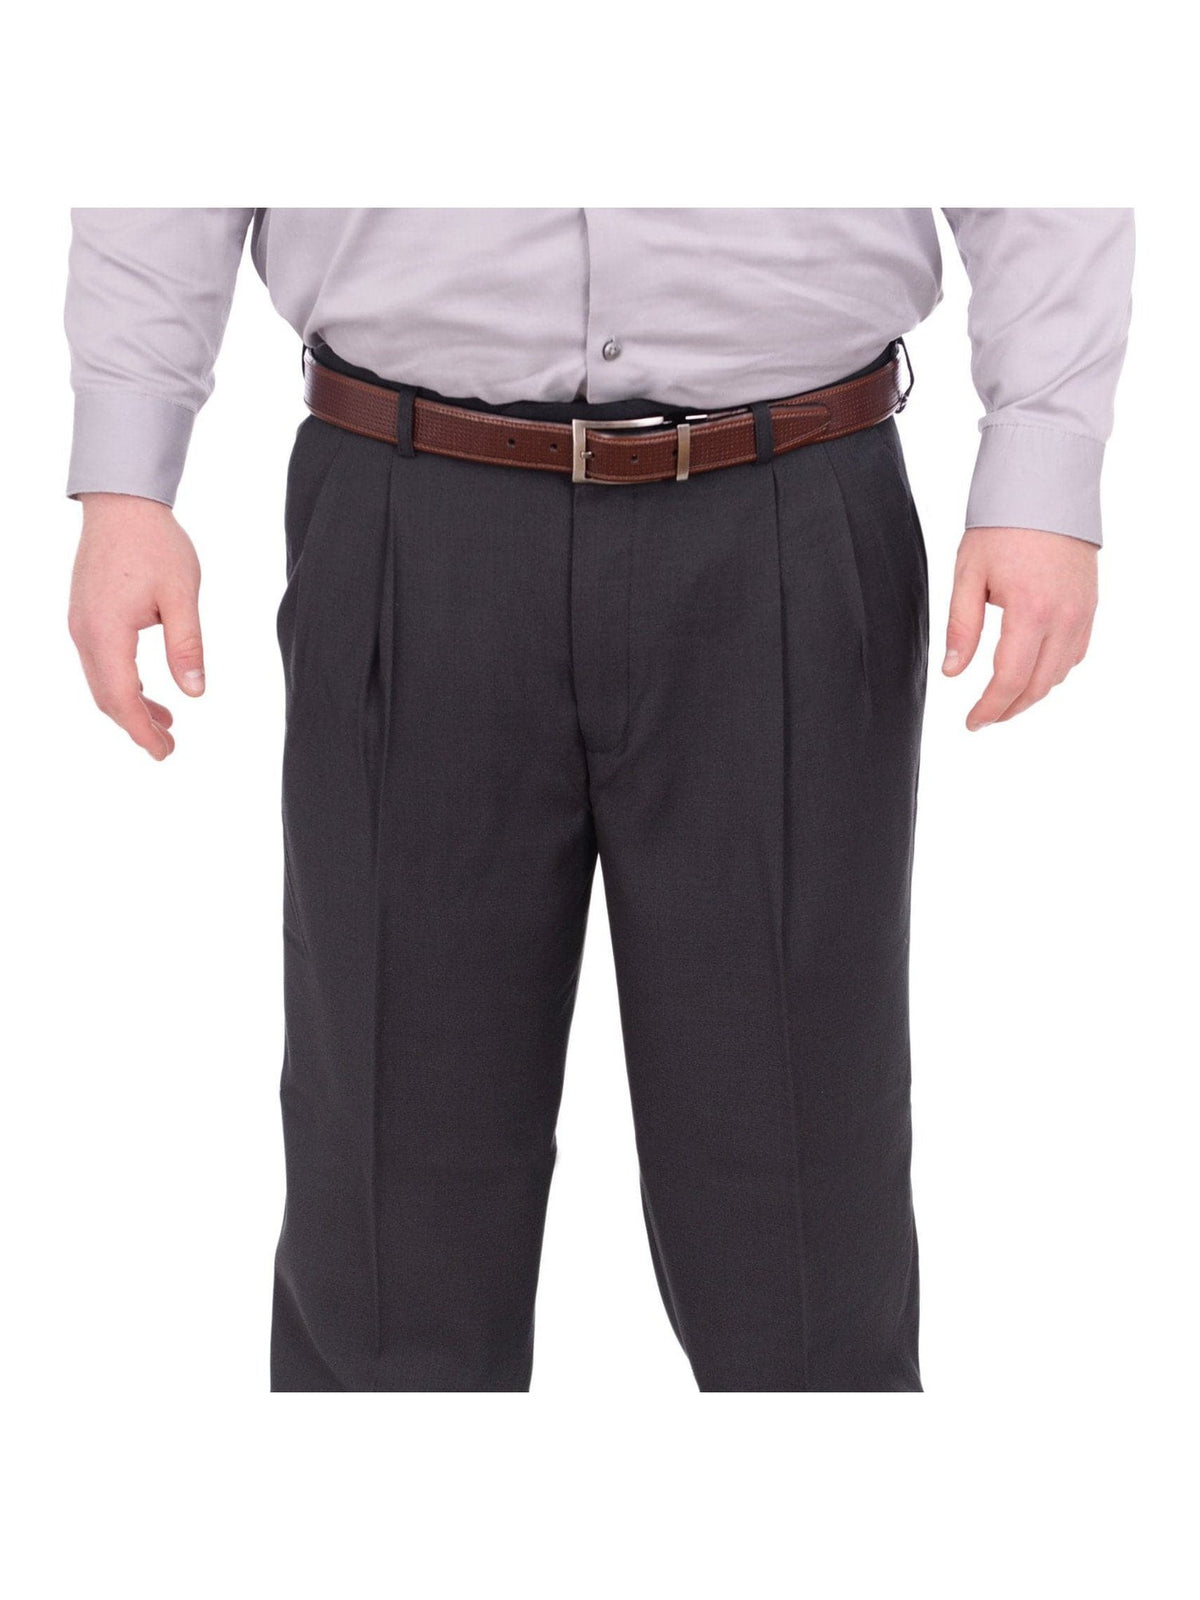 Mazari Sale Pants Mazari Classic Fit Solid Charcoal Gray Double Pleated Washable Dress Pants